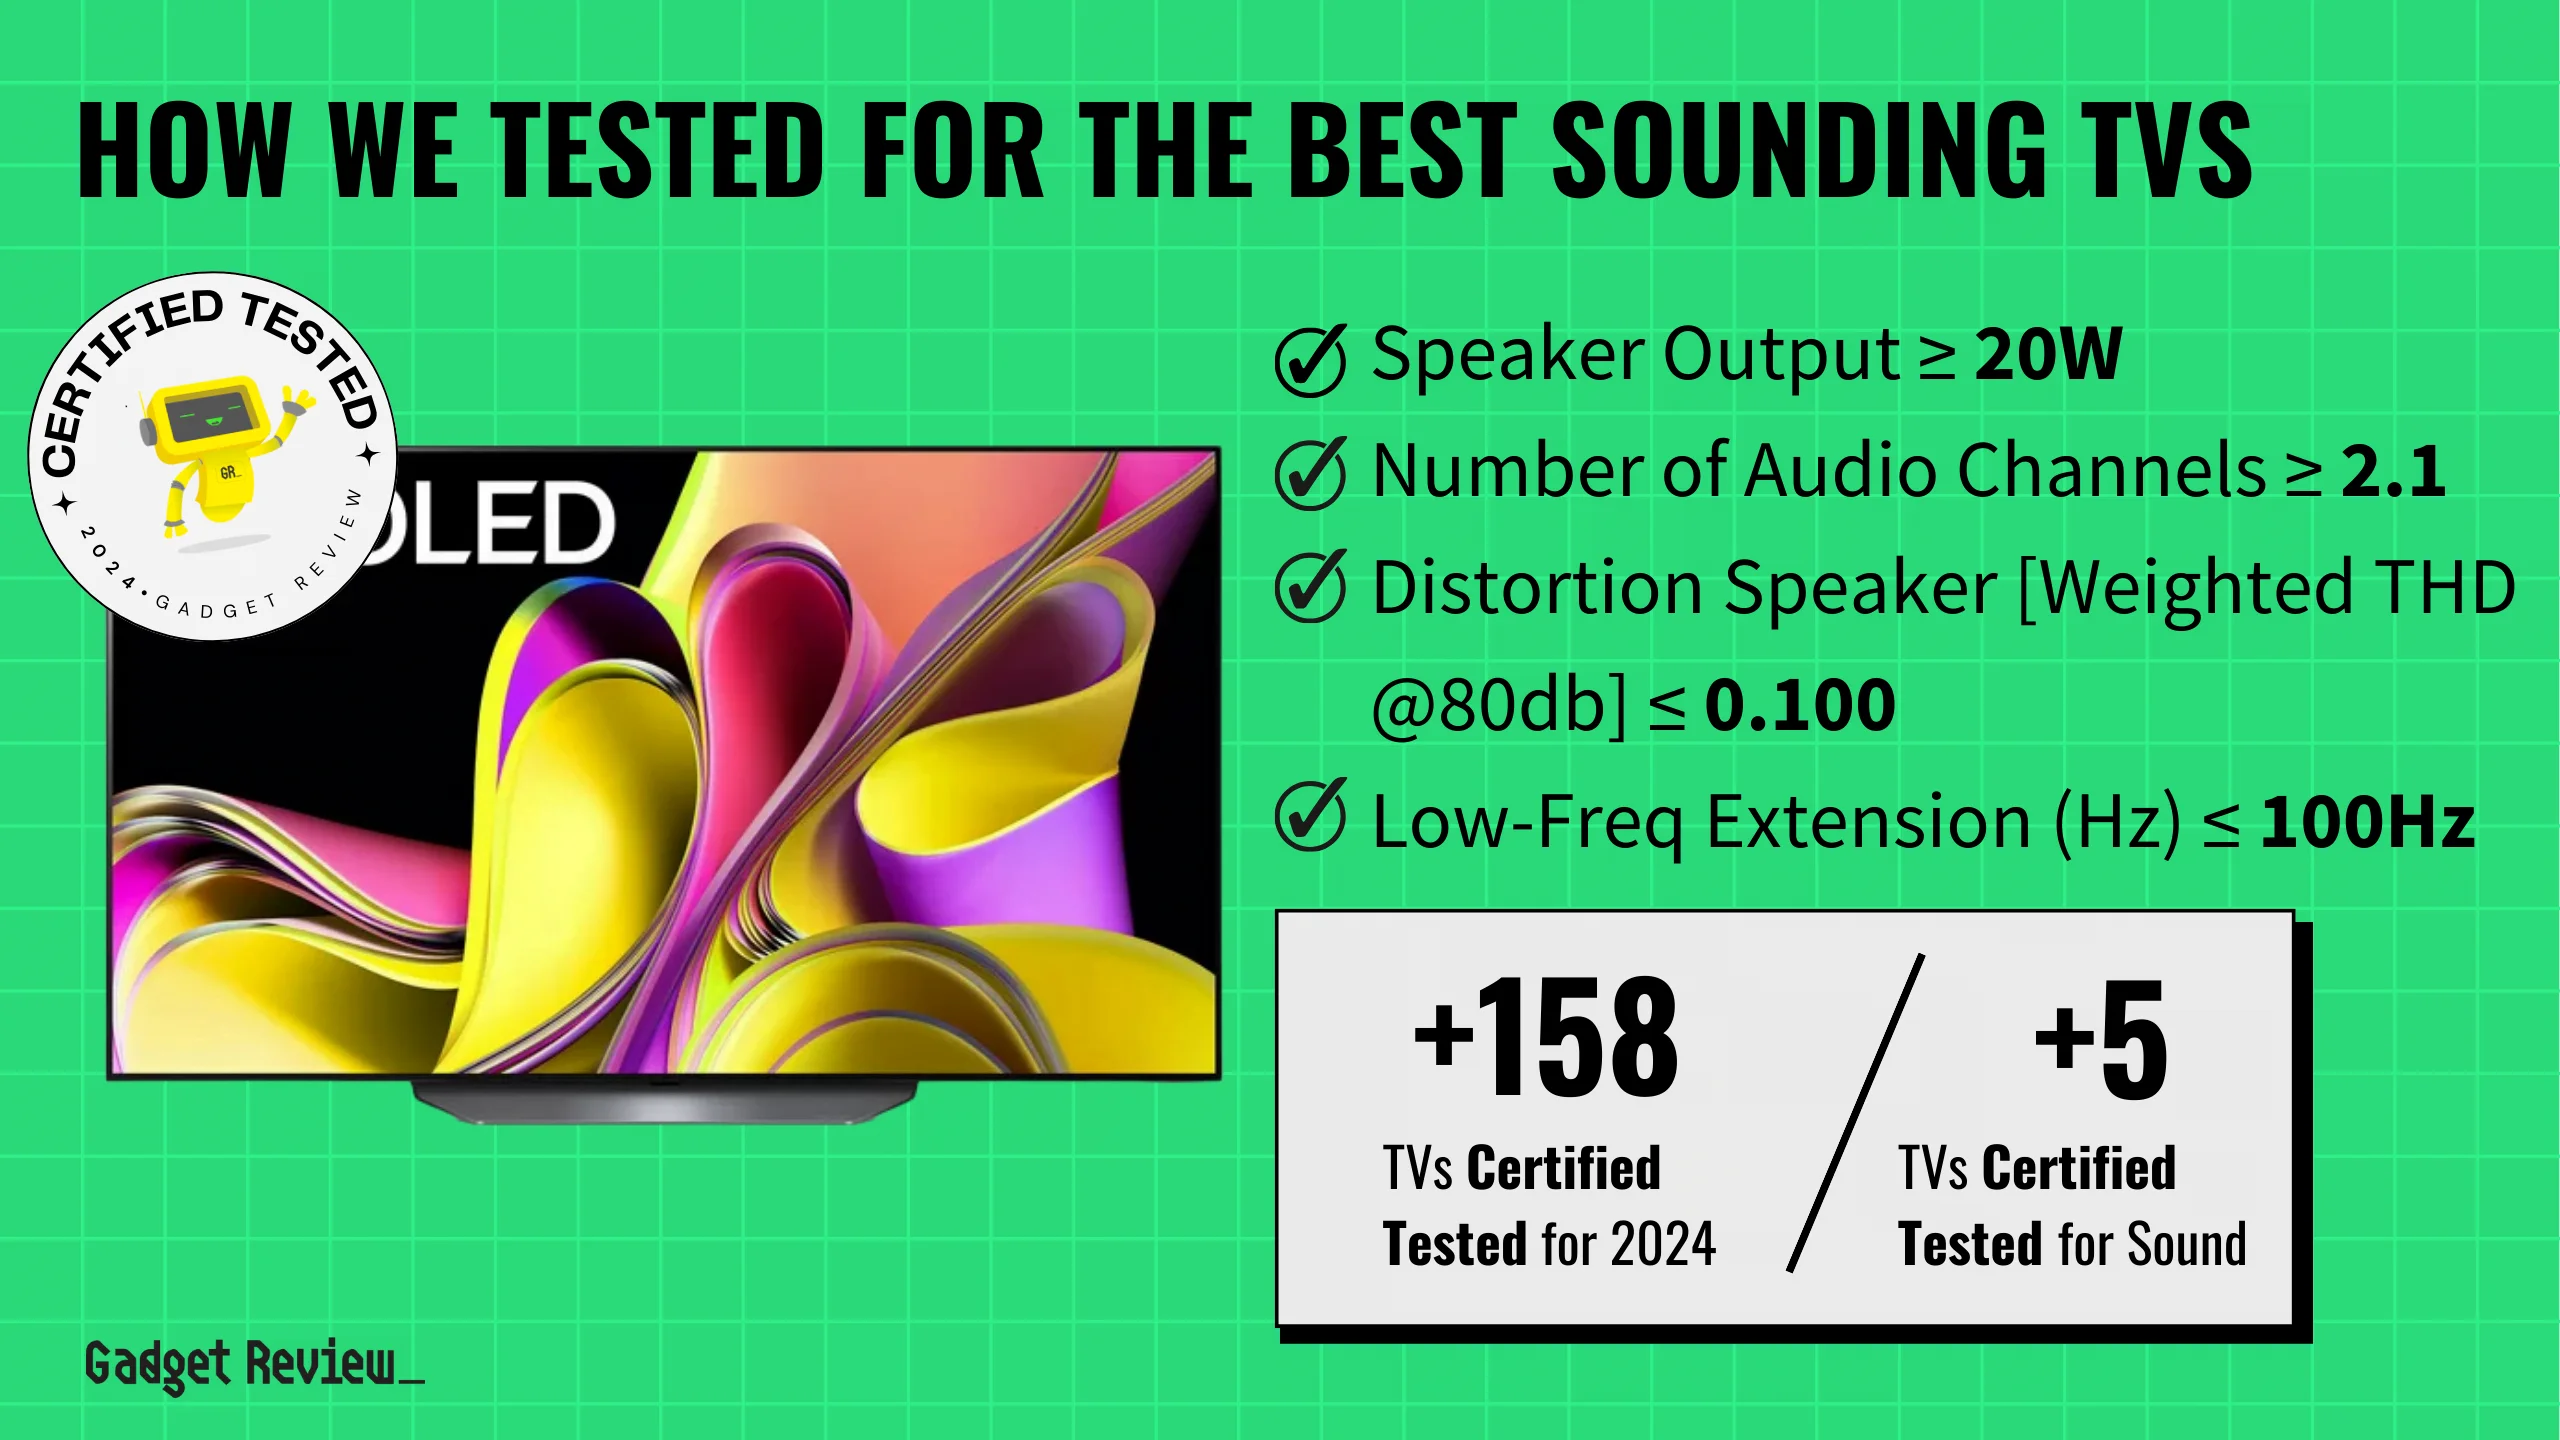 The Best Sounding TVs in 2024